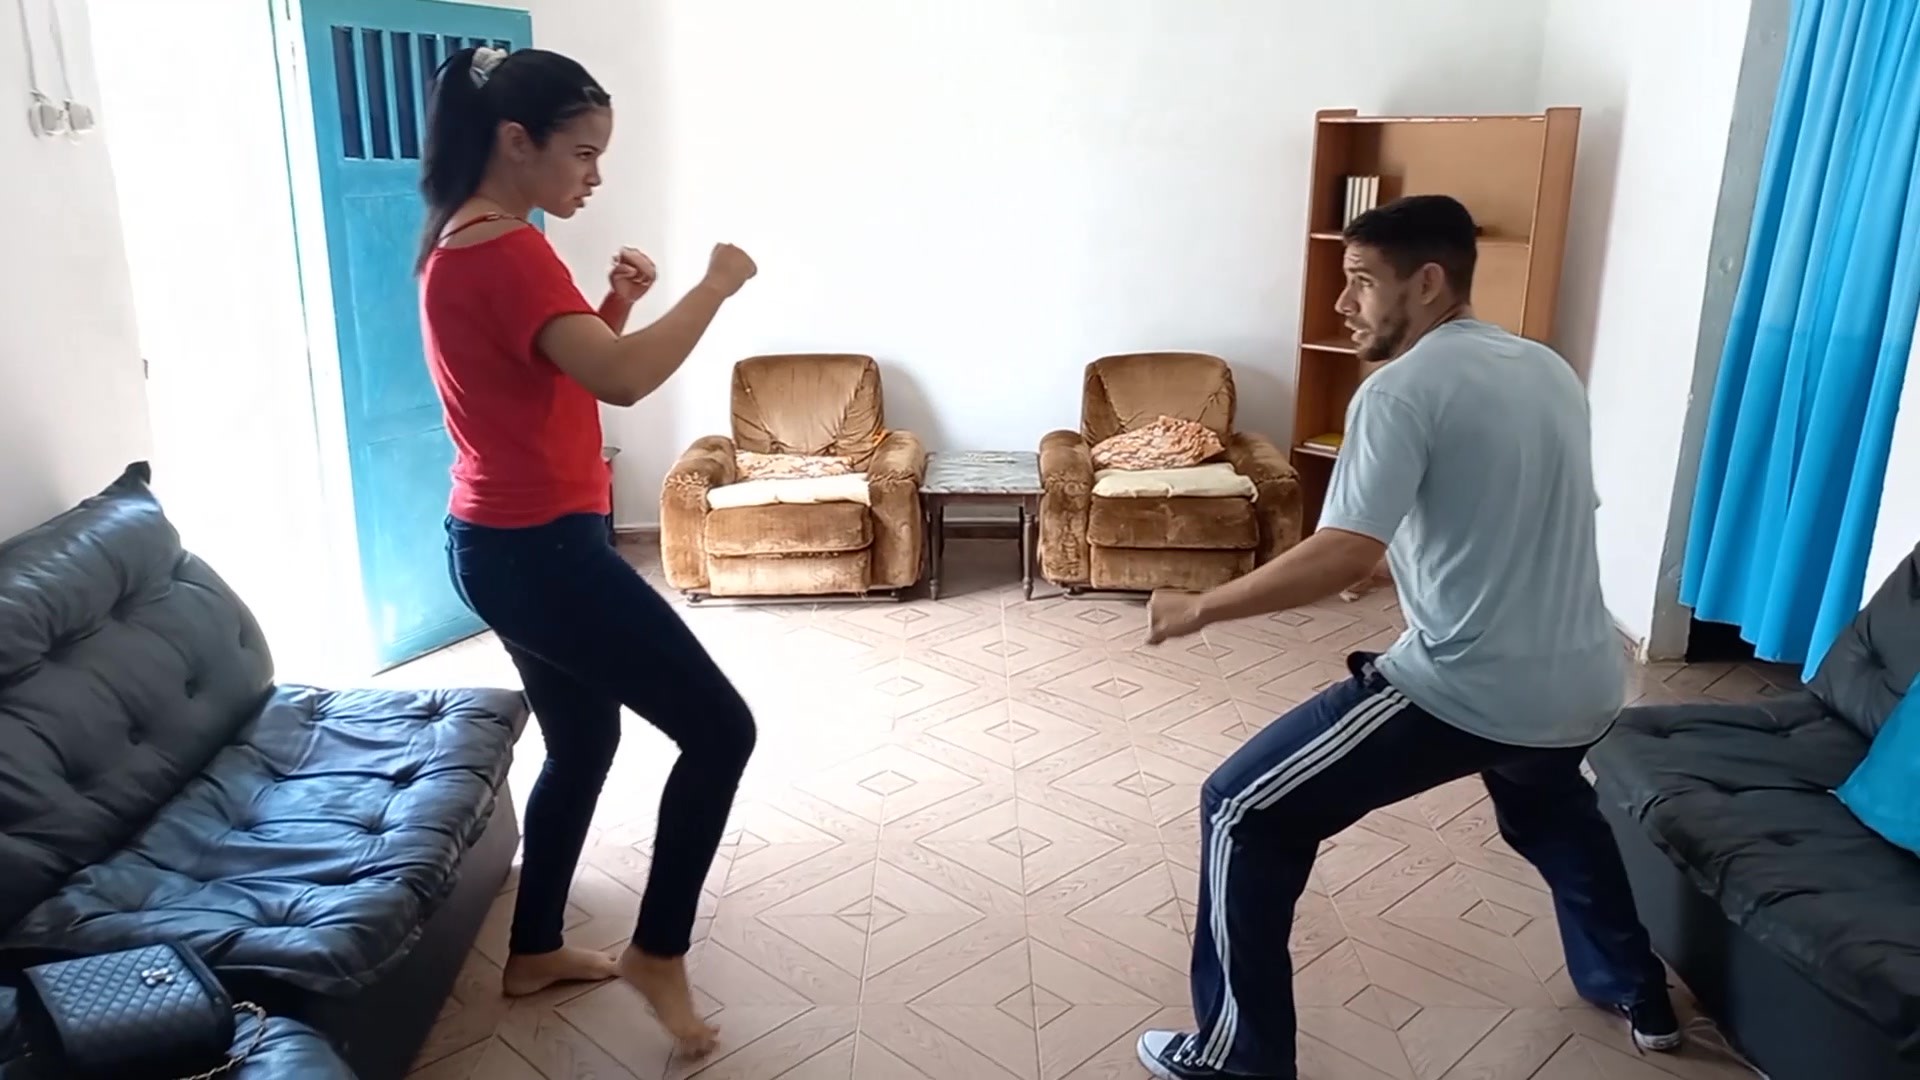 Oriana,hot karate woman defeats man